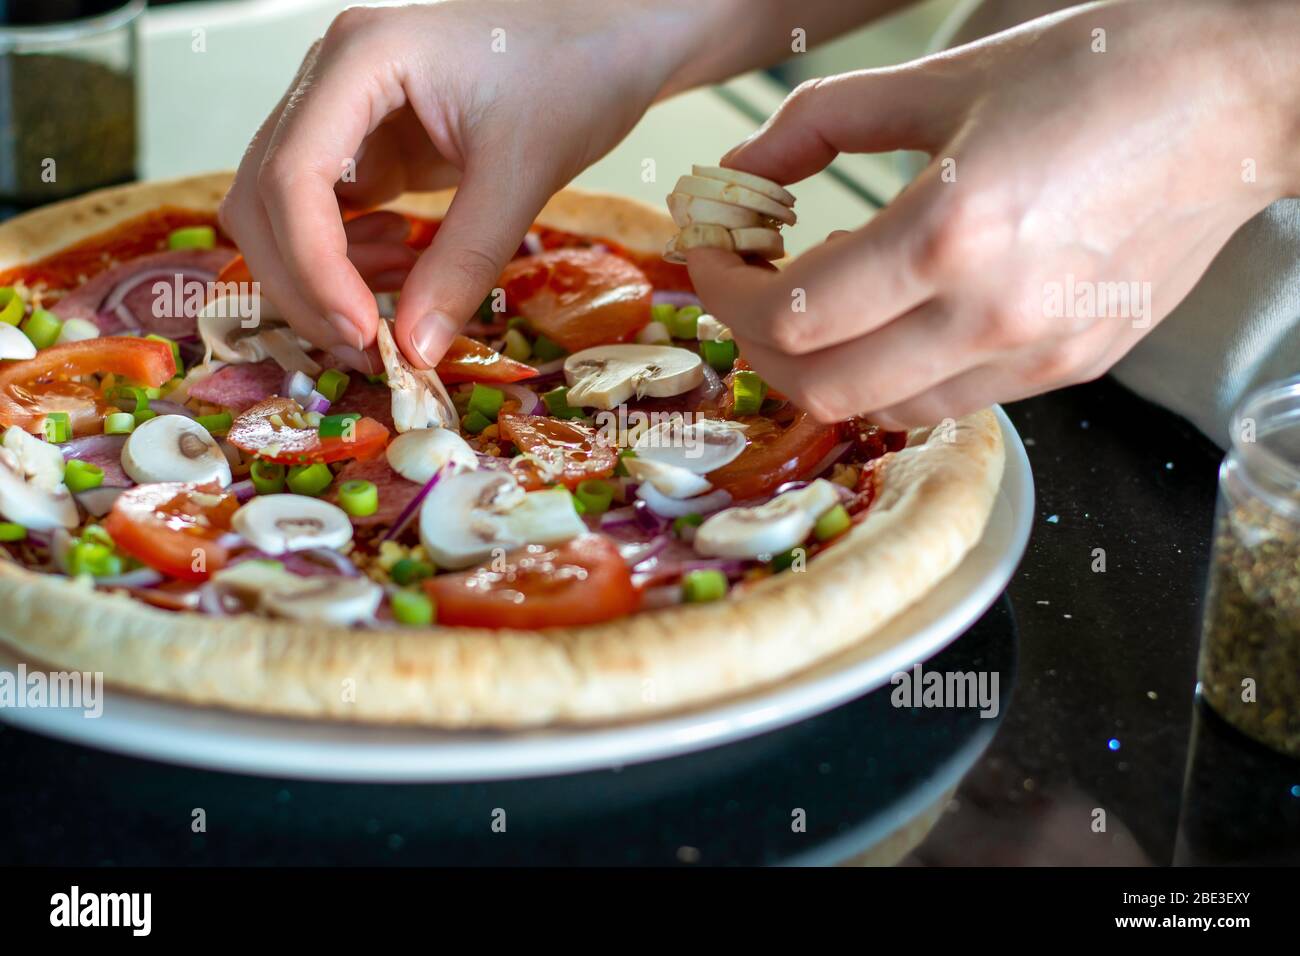 Pizza maison avec légumes. Le processus de fabrication de pizza à la maison. Mains de femme qui fait de la pizza et plaçant des champignons sur le dessus. Organisation des ingrédients Banque D'Images